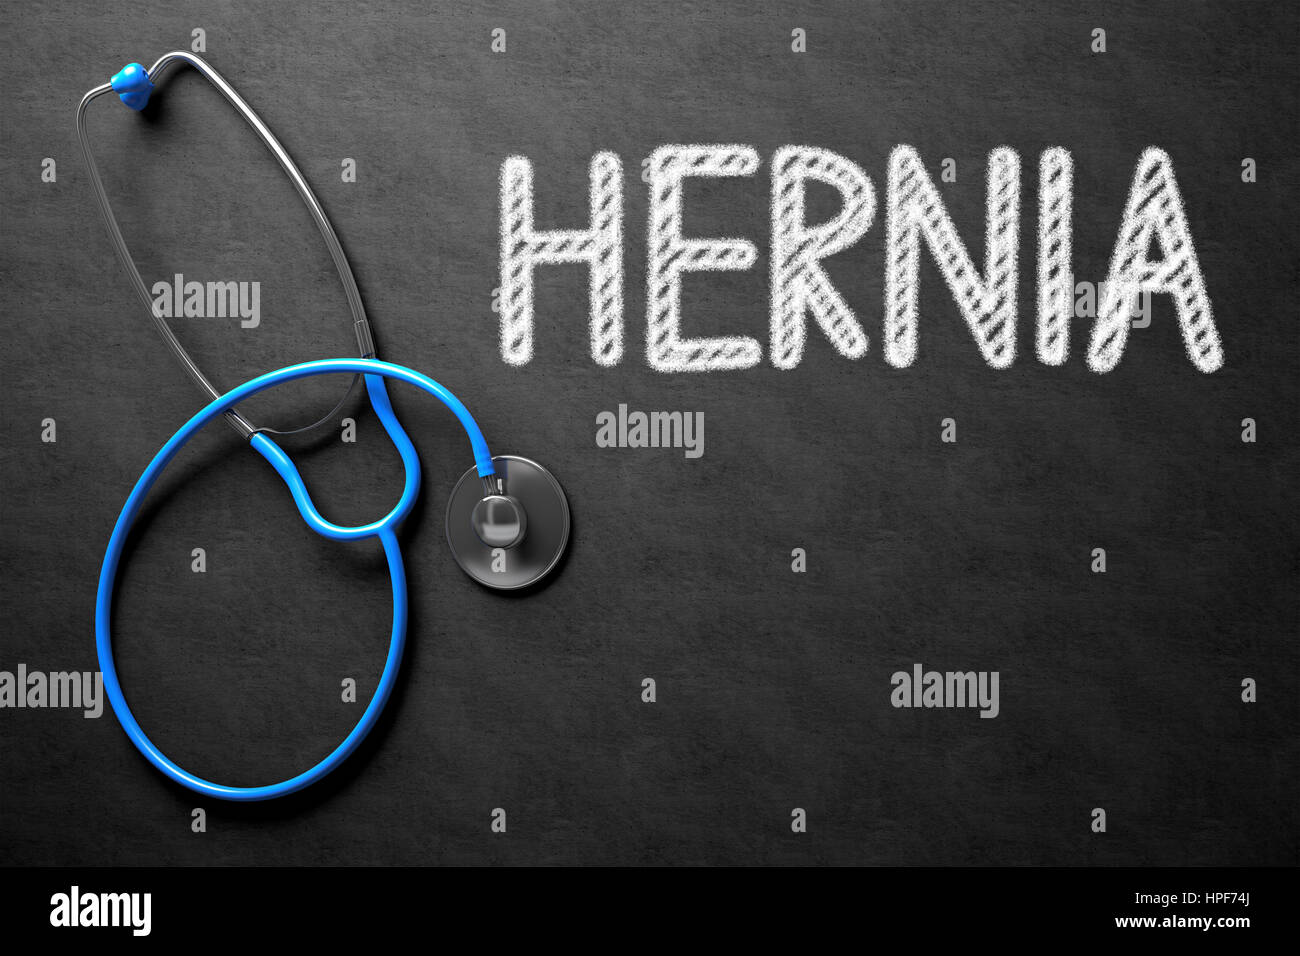 Concetto medico: ernia manoscritta su lavagna. Vista dall'alto di uno stetoscopio blu sulla lavagna. Lavagna nera con ernia - concetto medico. 3 Foto Stock